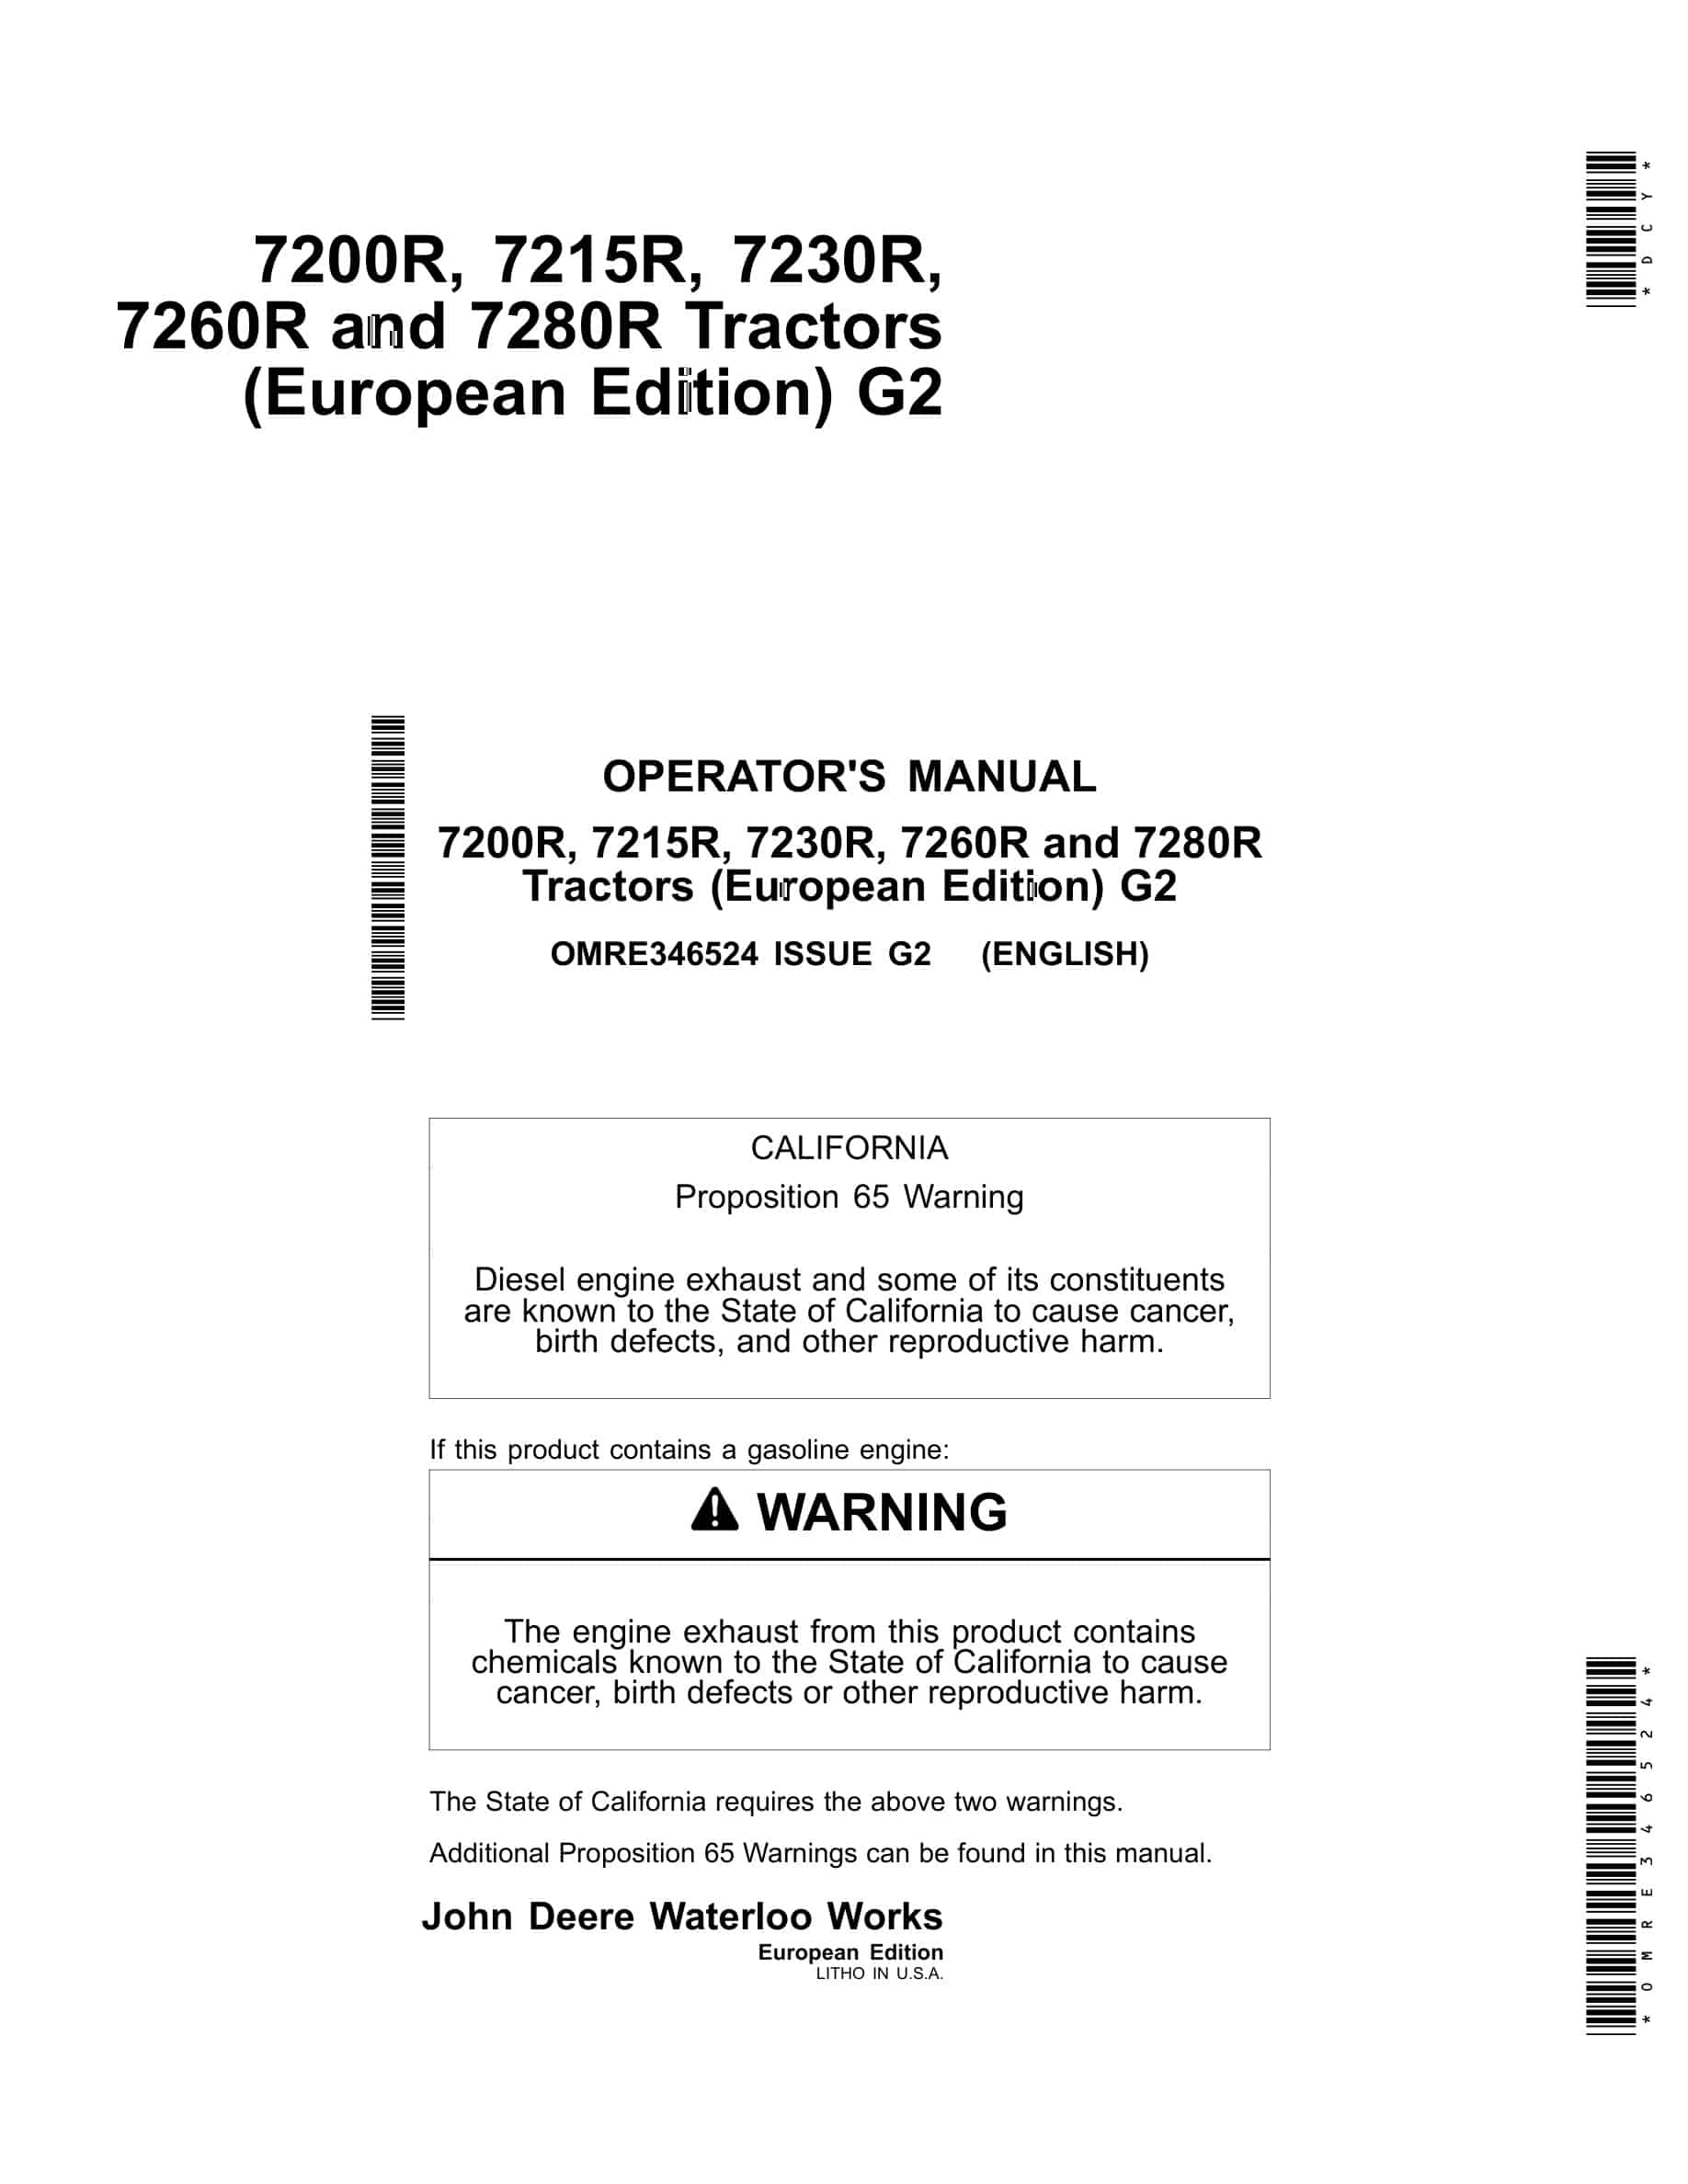 John Deere 7200r, 7215r, 7230r, 7260r And 7280r Tractors Operator Manuals OMRE346524-1